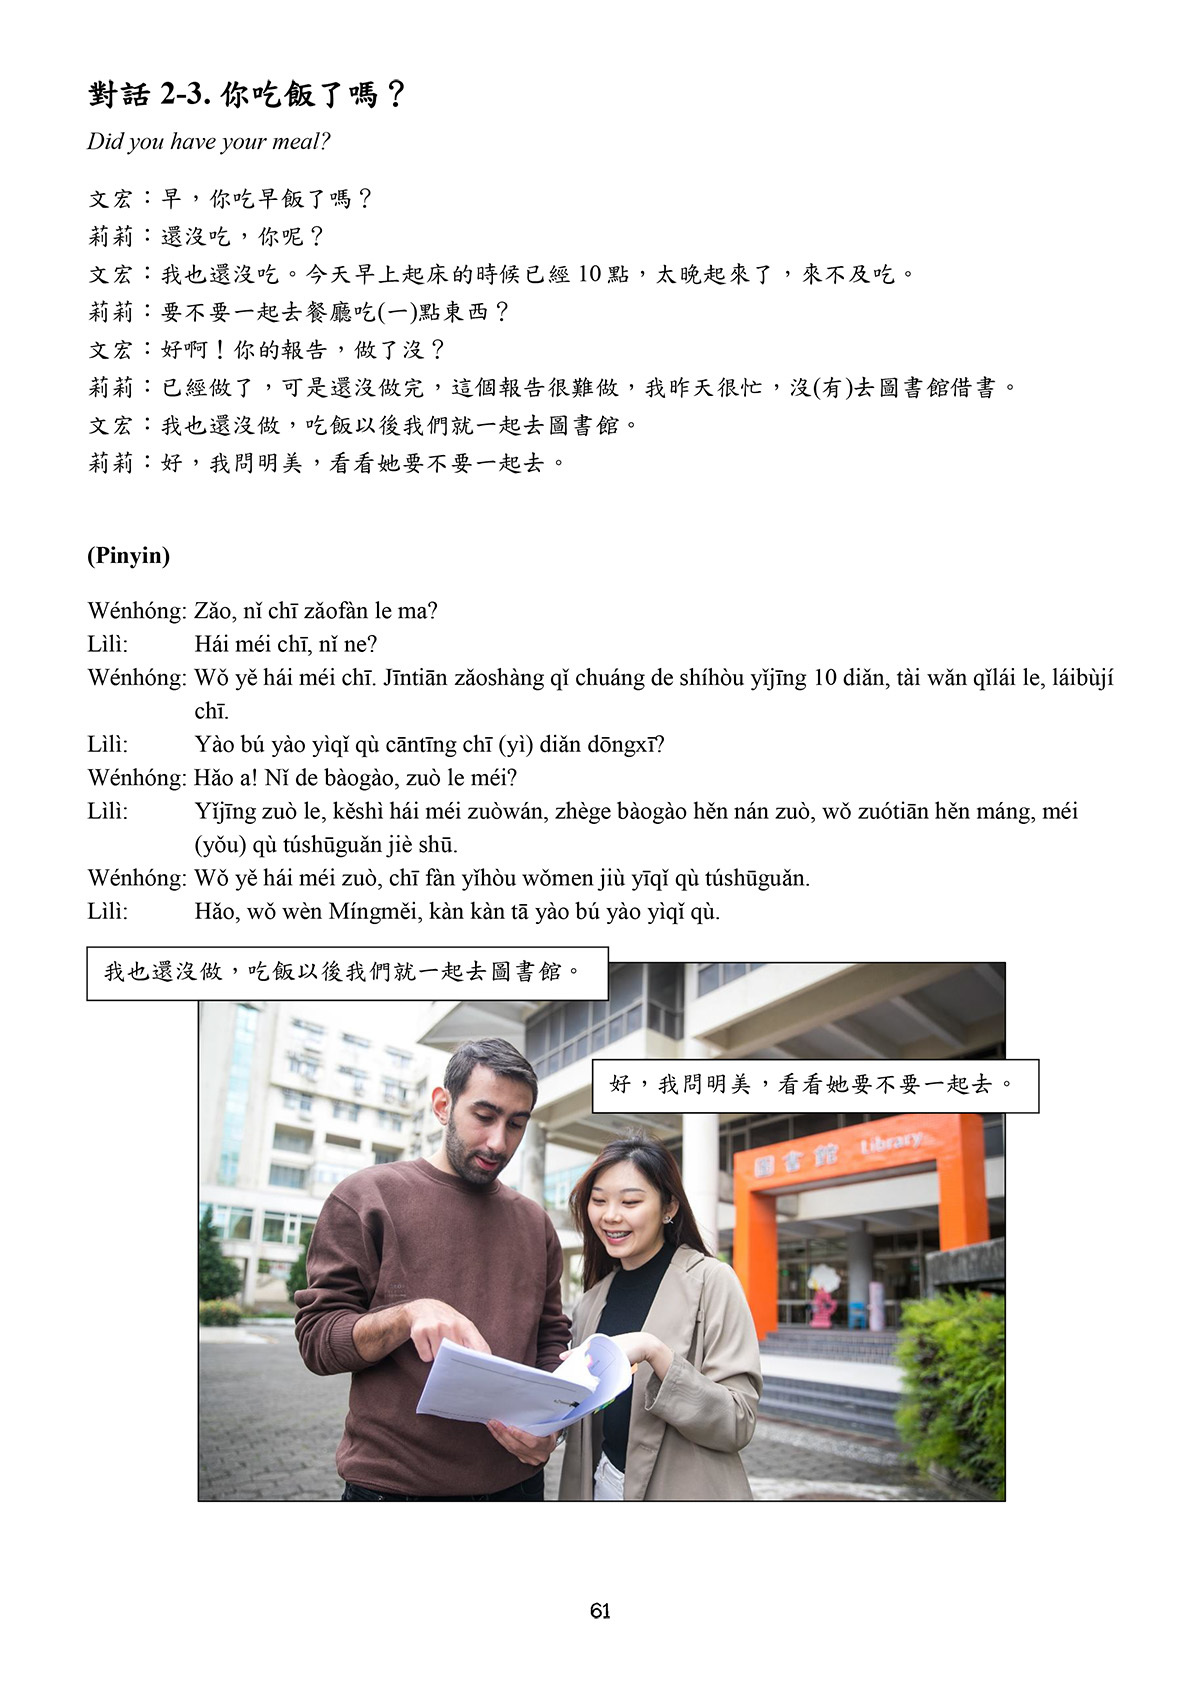 《留學生華語》內頁示例-你吃飯了嗎